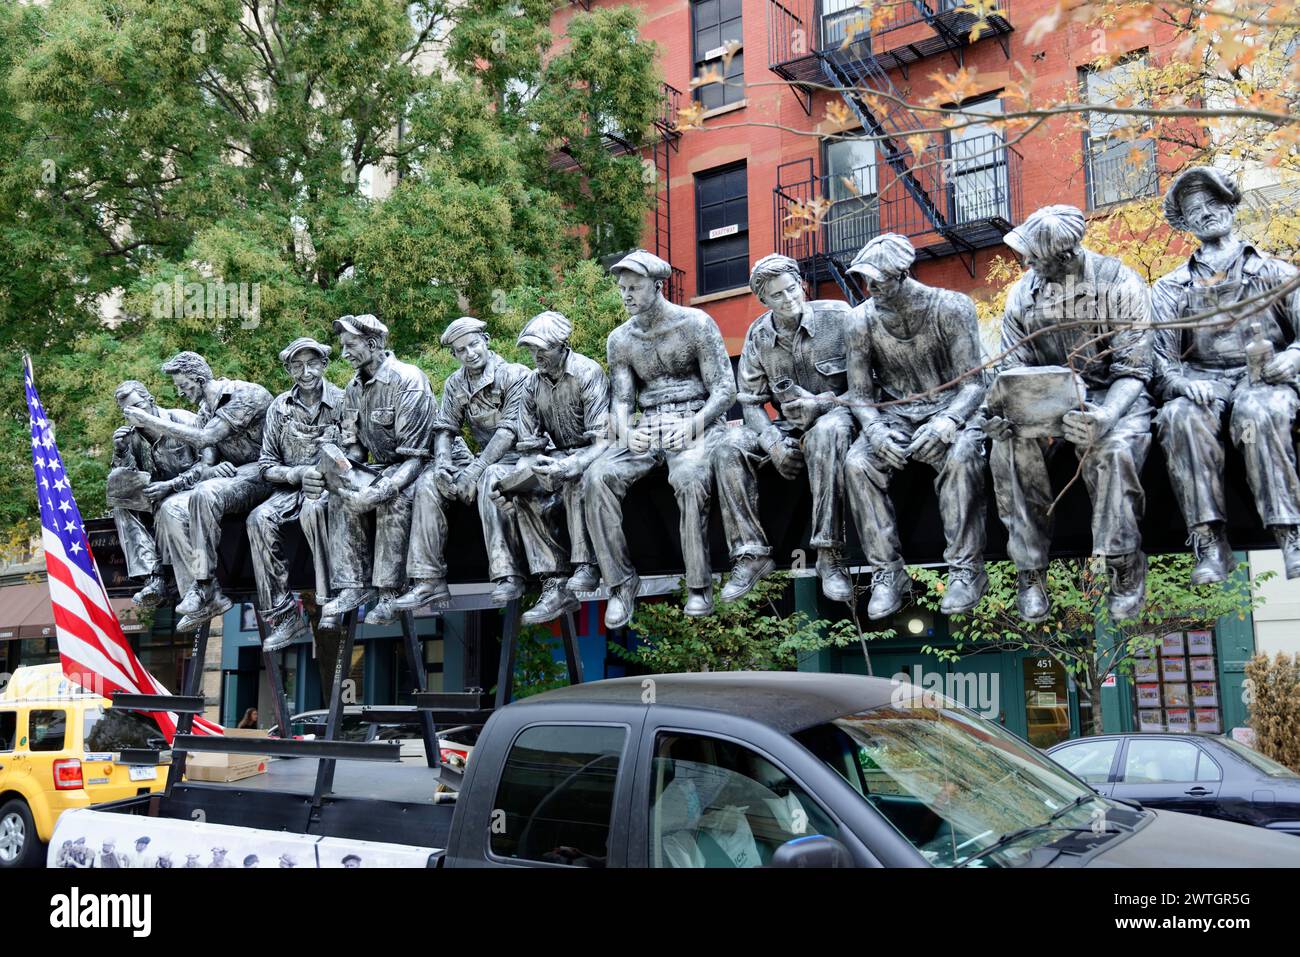 Esculturas de tamaño natural de trabajadores con una bandera americana en el fondo, Manhattan, Nueva York, Nueva York, EE.UU., América del Norte Foto de stock